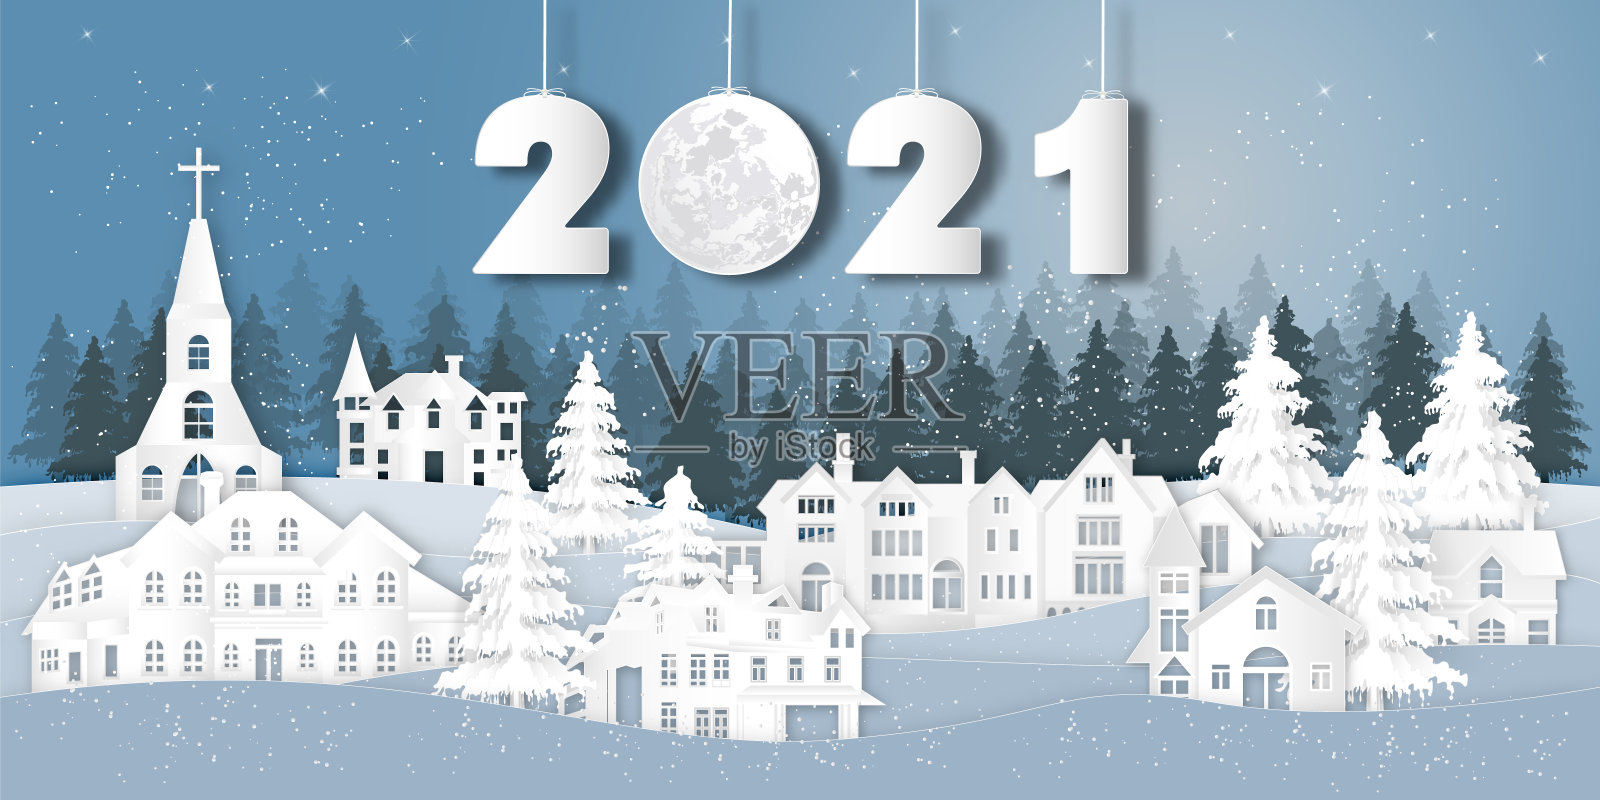 纸艺术、剪纸和数字工艺风格的房屋村庄在雪冬季与树木作为圣诞快乐和2021年新年的概念。矢量图插画图片素材